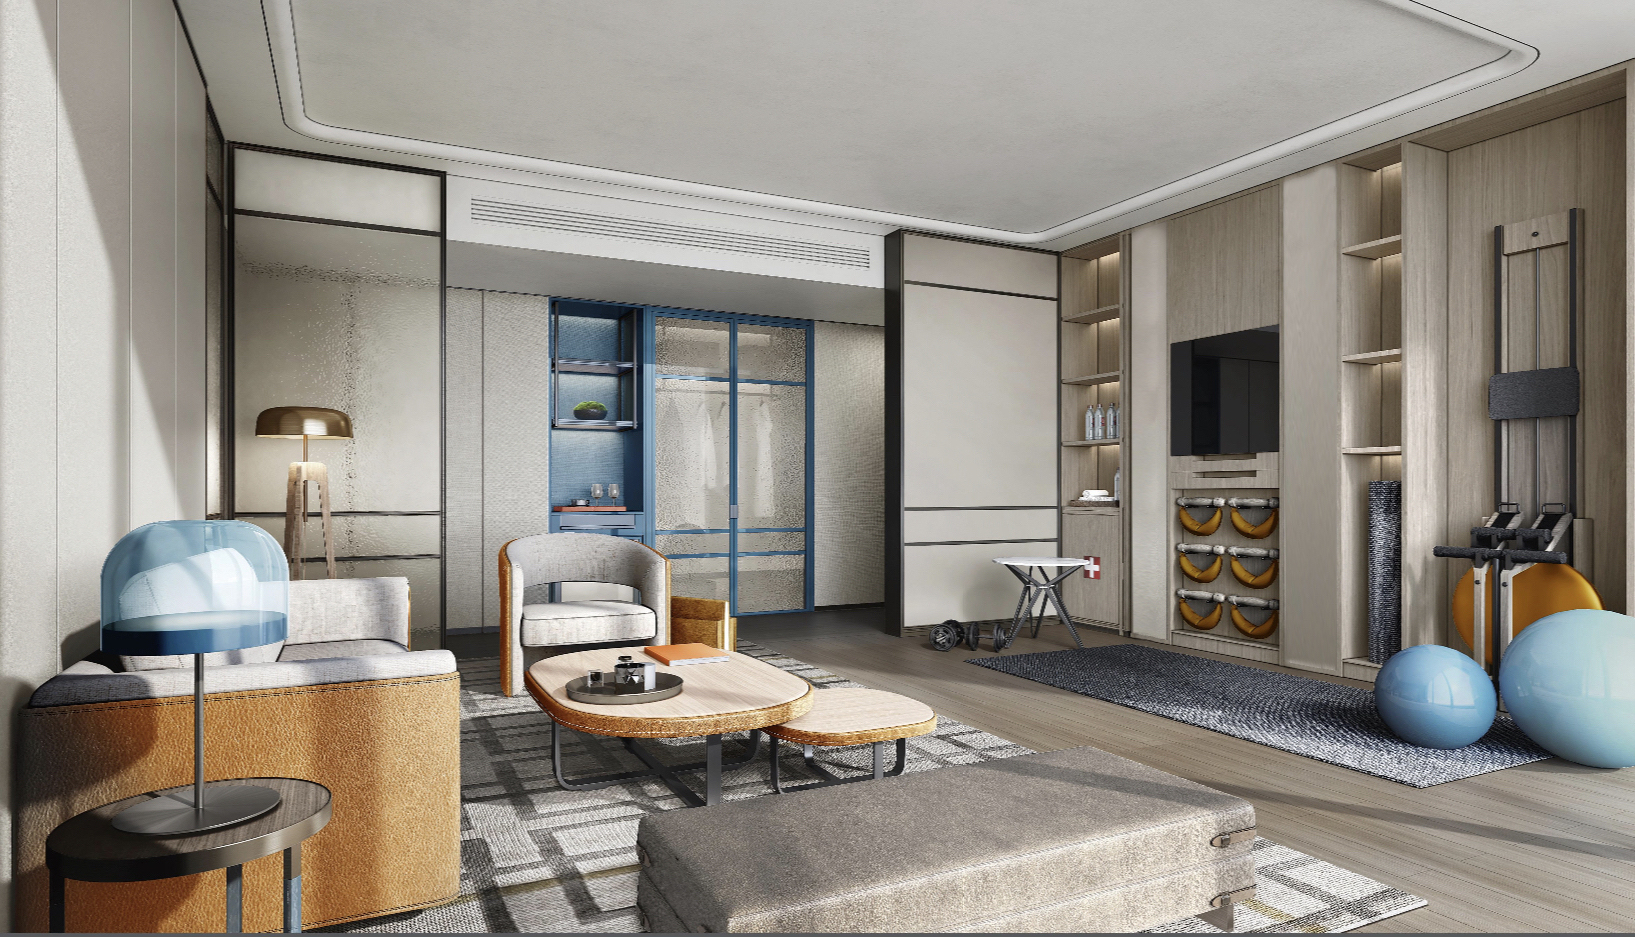 北京港澳中心瑞士酒店 Swissotel Beijing - Vitality Suite - Living Room R.jpeg